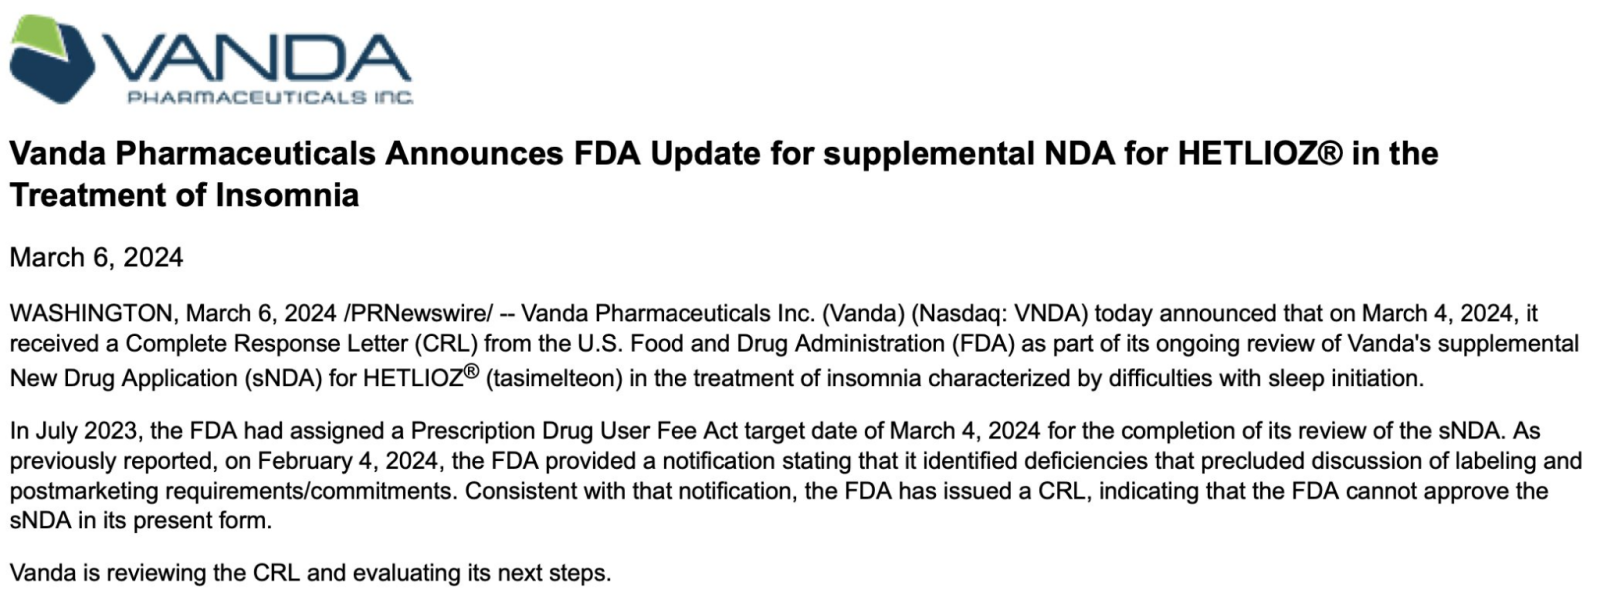 $バンダ ファーマシューティカルズ (VNDA.US)$ ⚠️ HETLIOZ®の不眠症治療用sNDAに対するFDAのCRLが3月4日に発行されました 🙁 🔎 VNDAはCRLを審査し、次のステップを評価しています... 🗓️ PDUFA日付：03/04/24